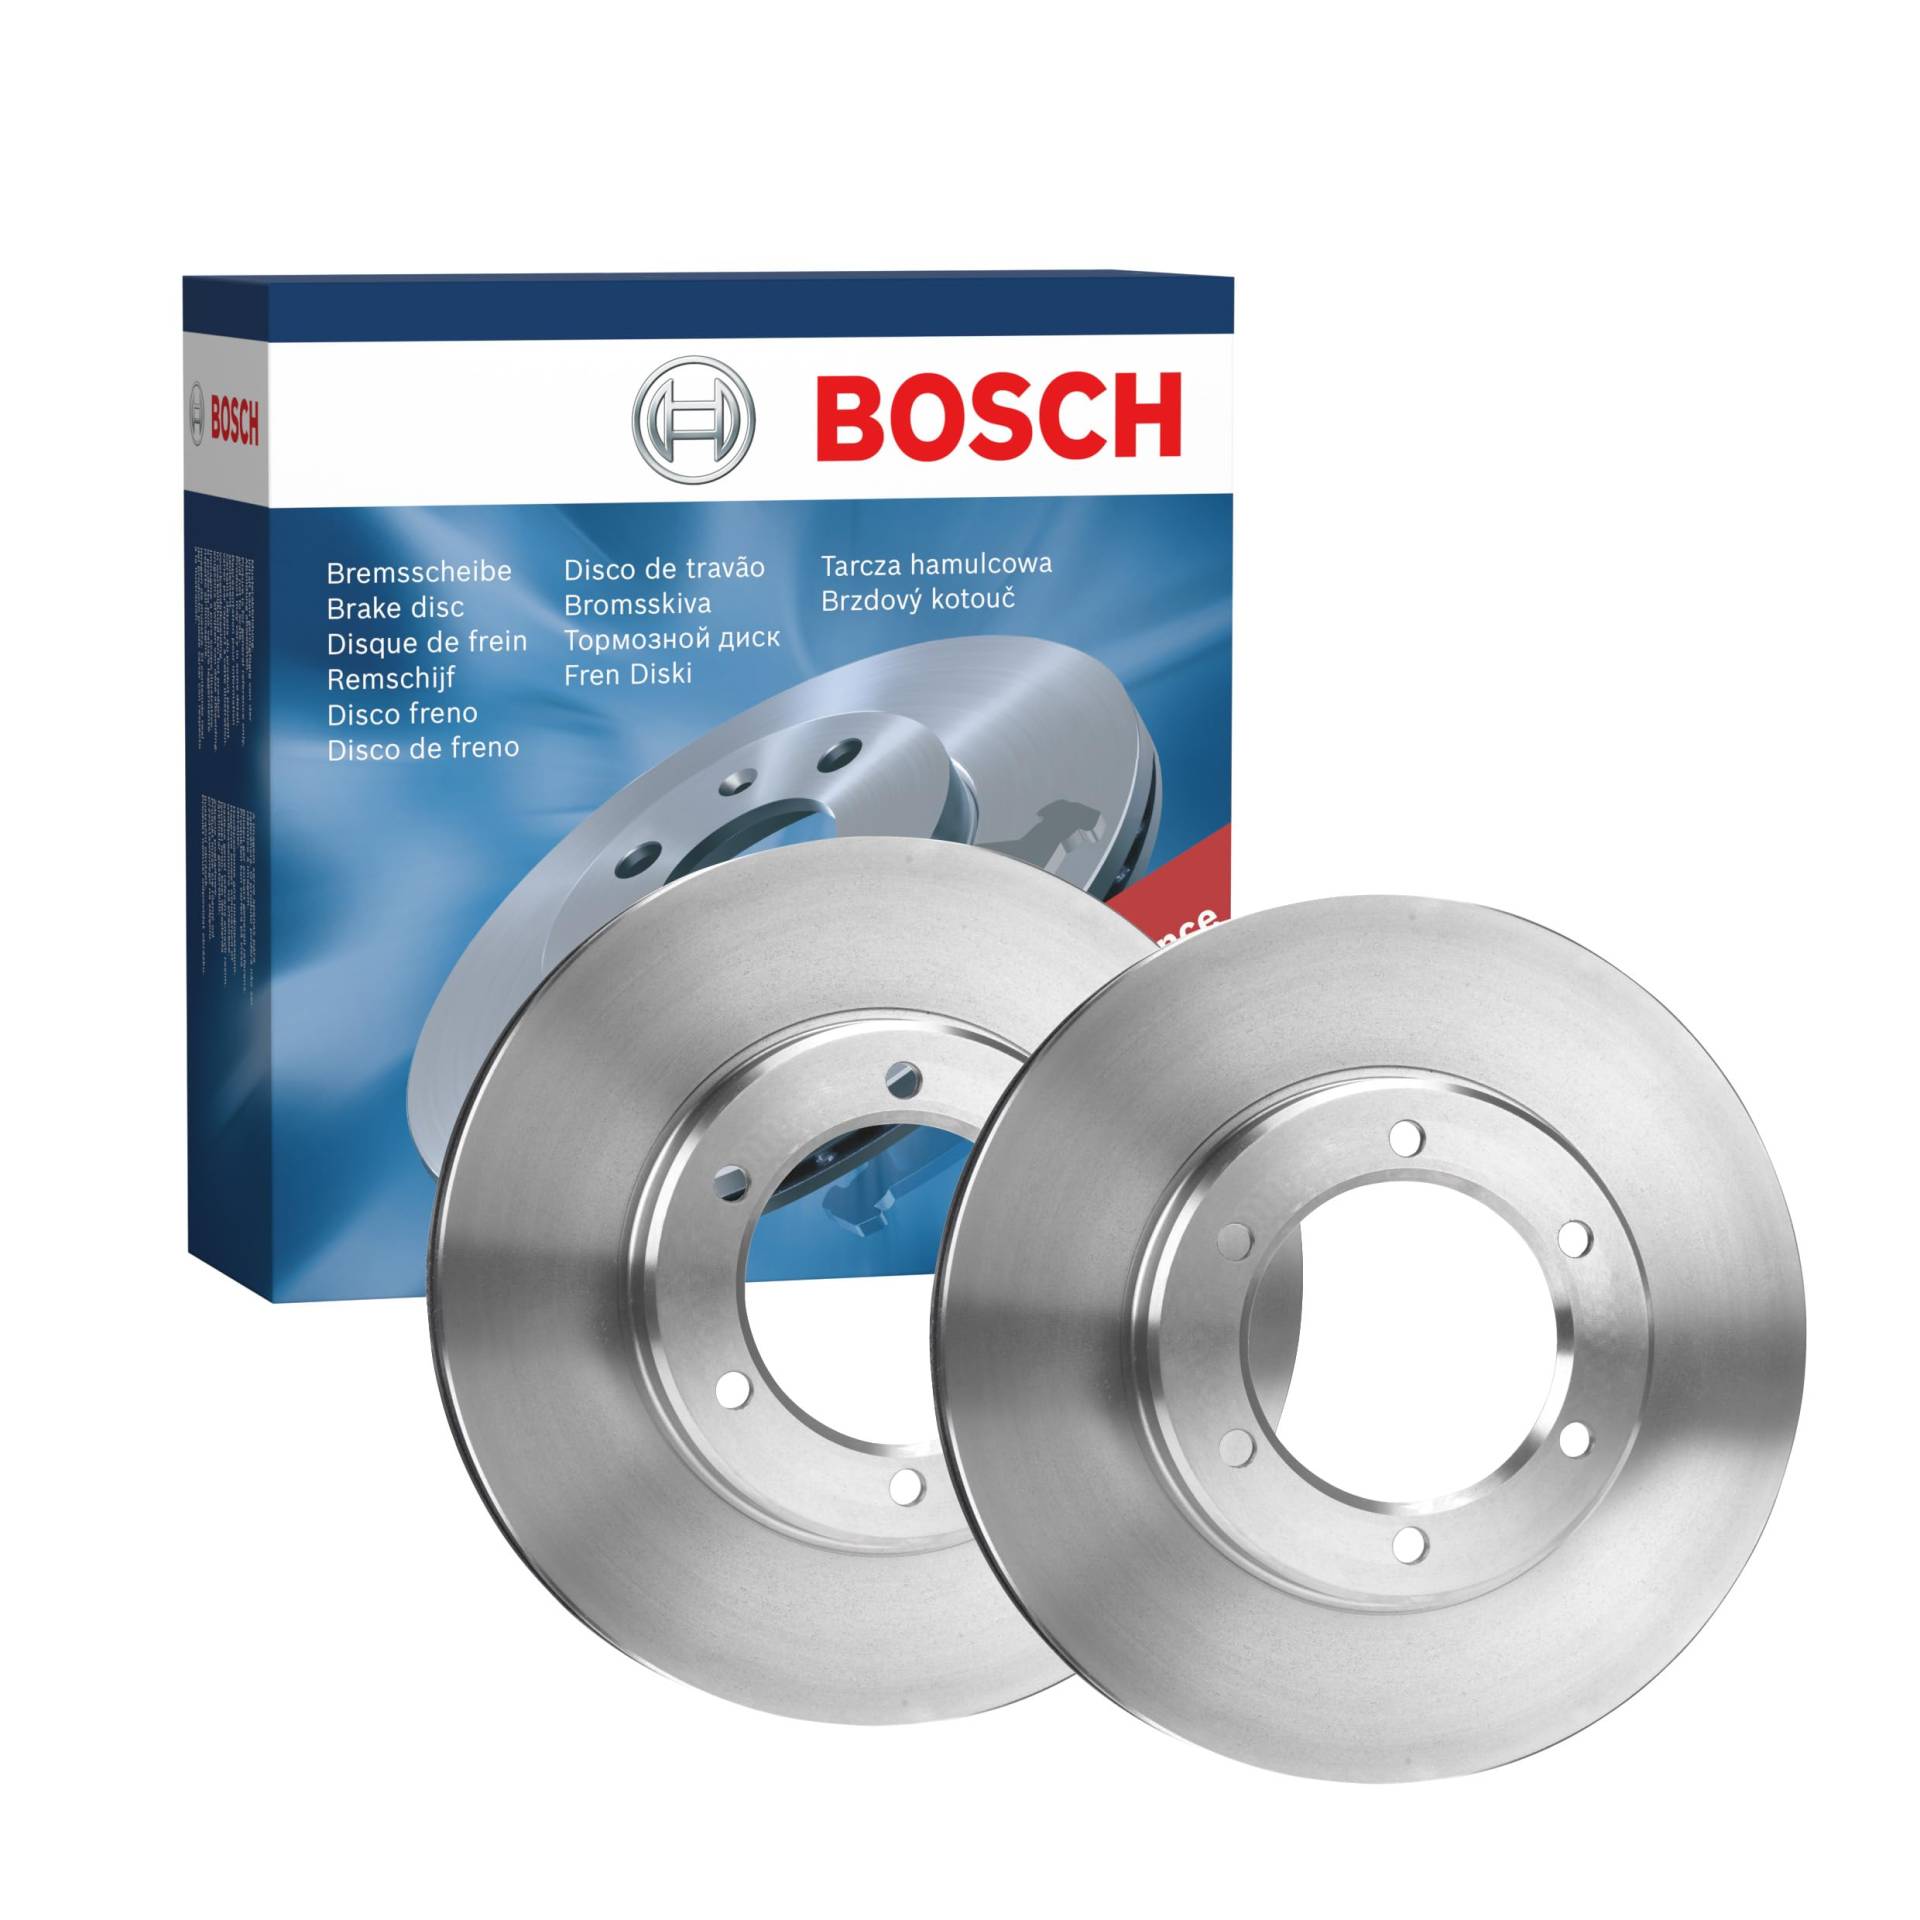 Bosch BD2155 Bremsscheiben - Vorderachse - ECE-R90 Zertifizierung - zwei Bremsscheiben pro Set von Bosch Automotive